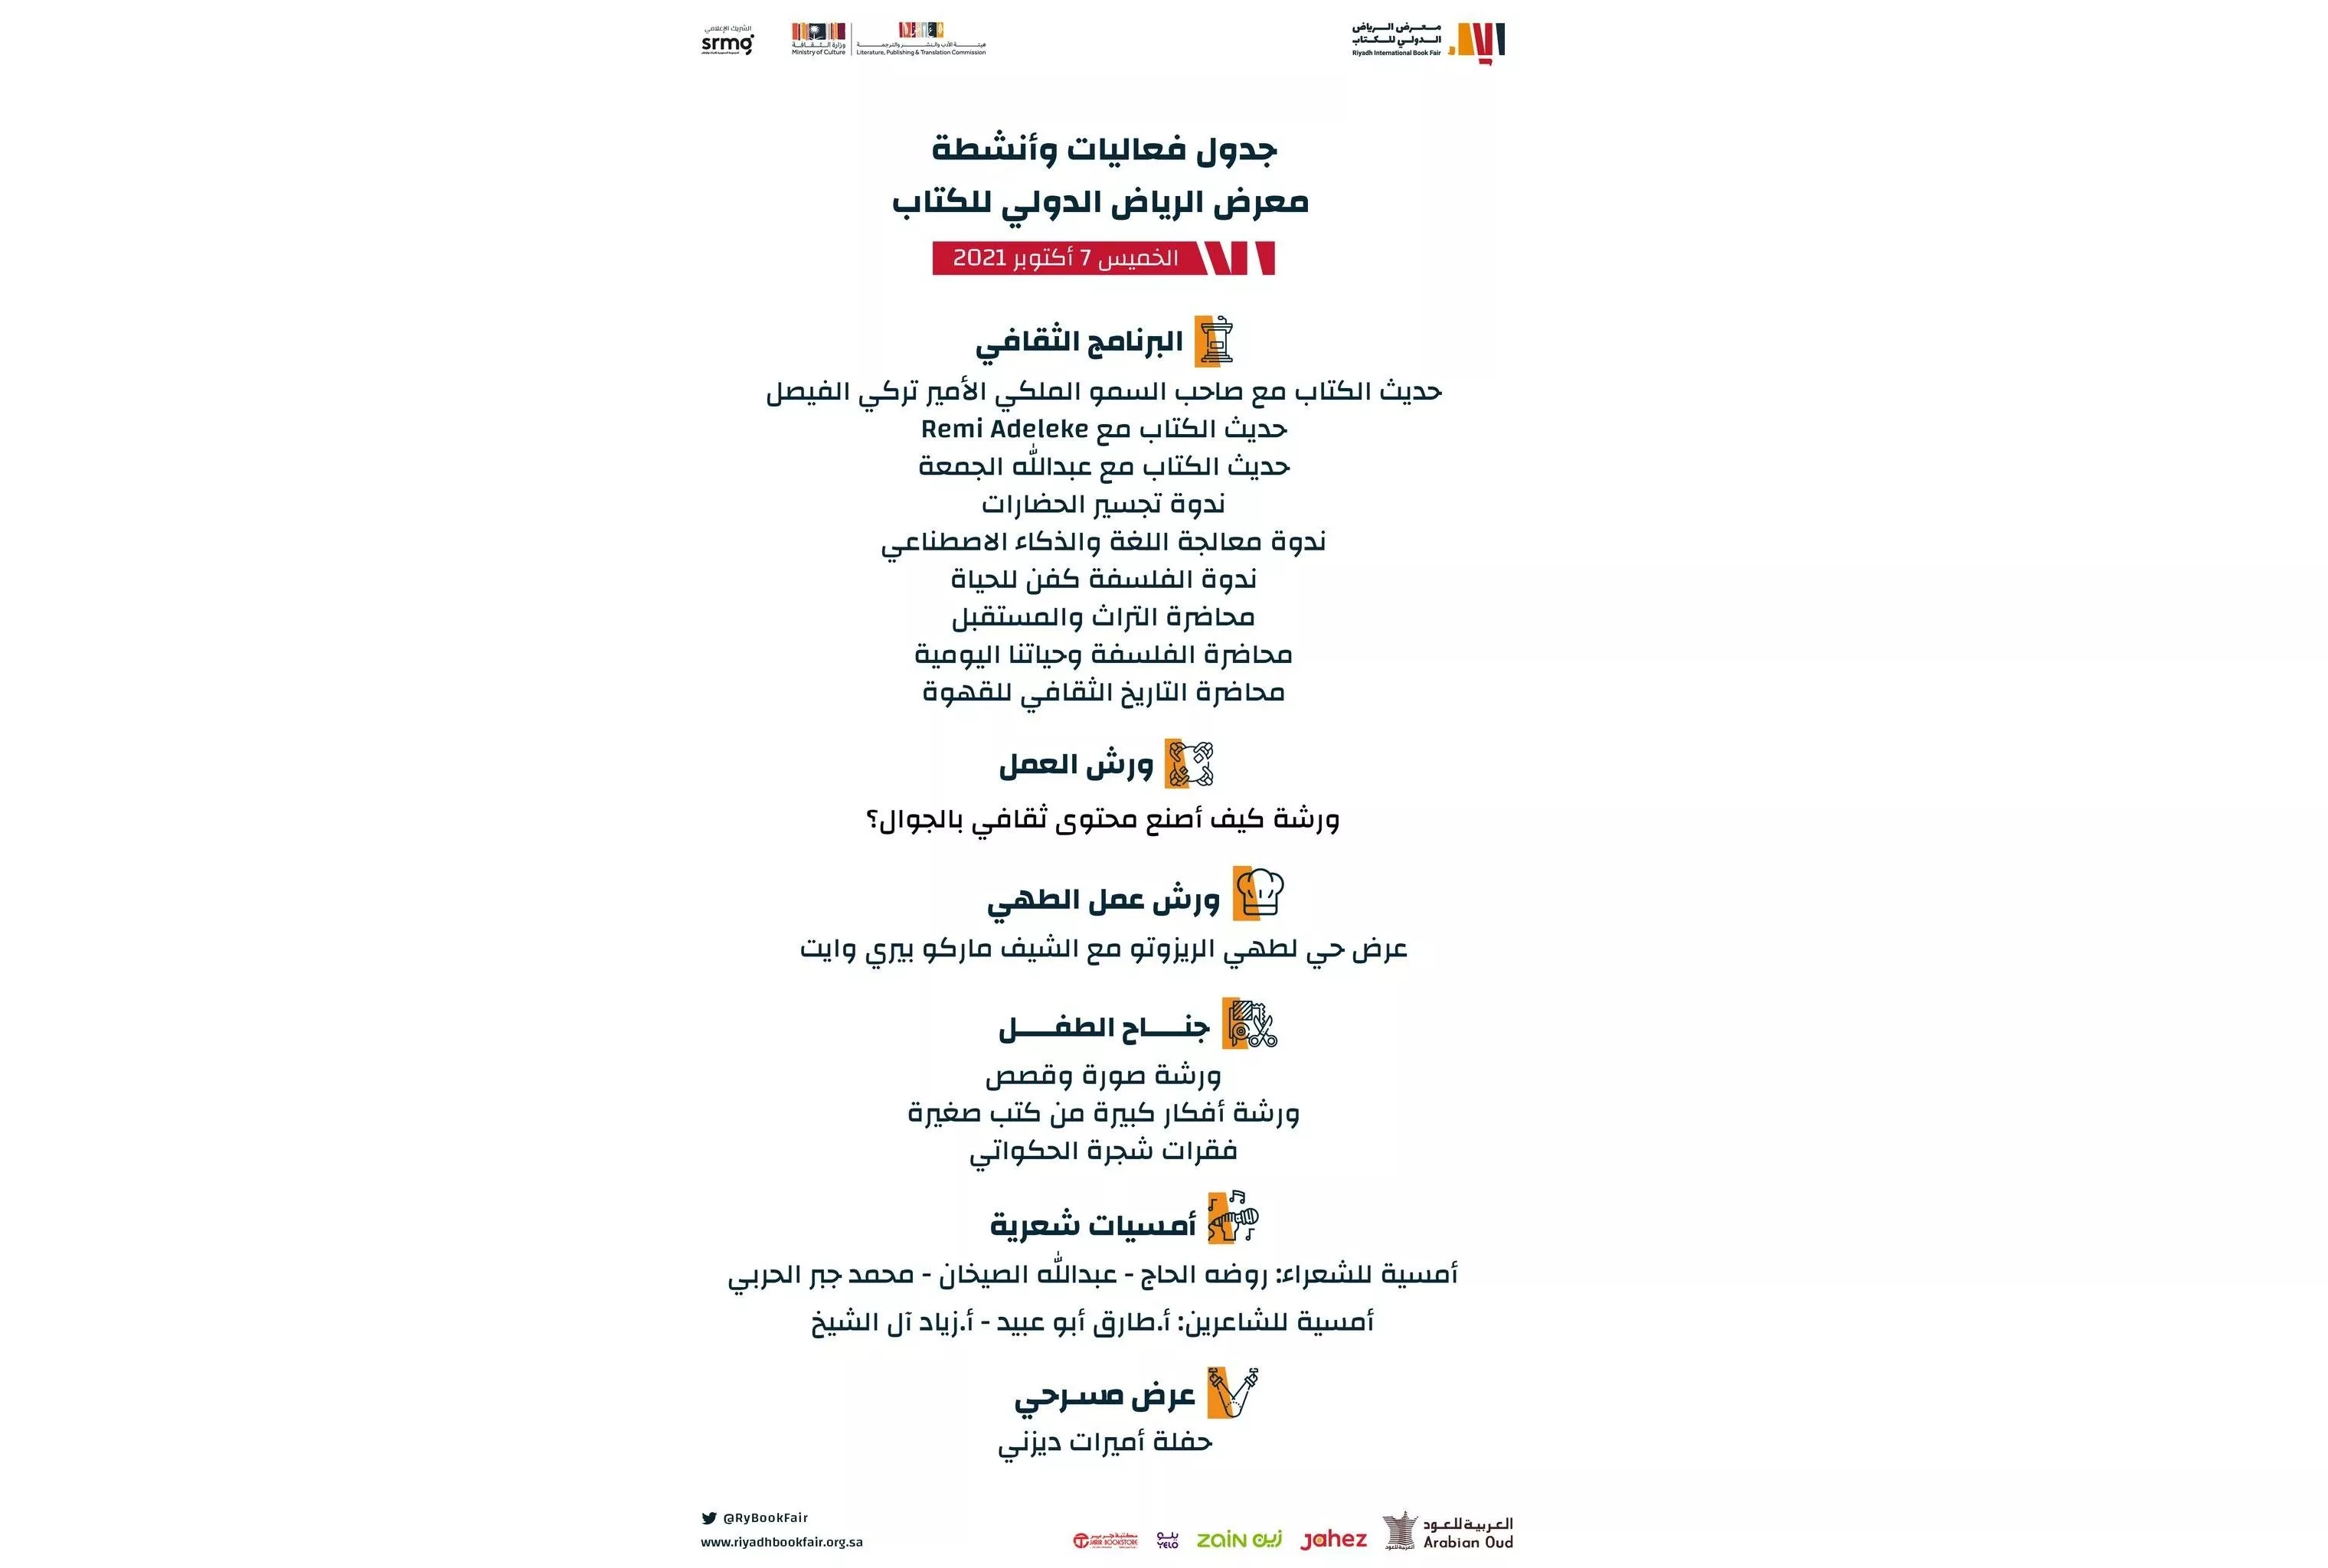 معرض الرياض الدولي للكتاب 2021: منصة إفتراضية وإجراءات إحترازية جديدة